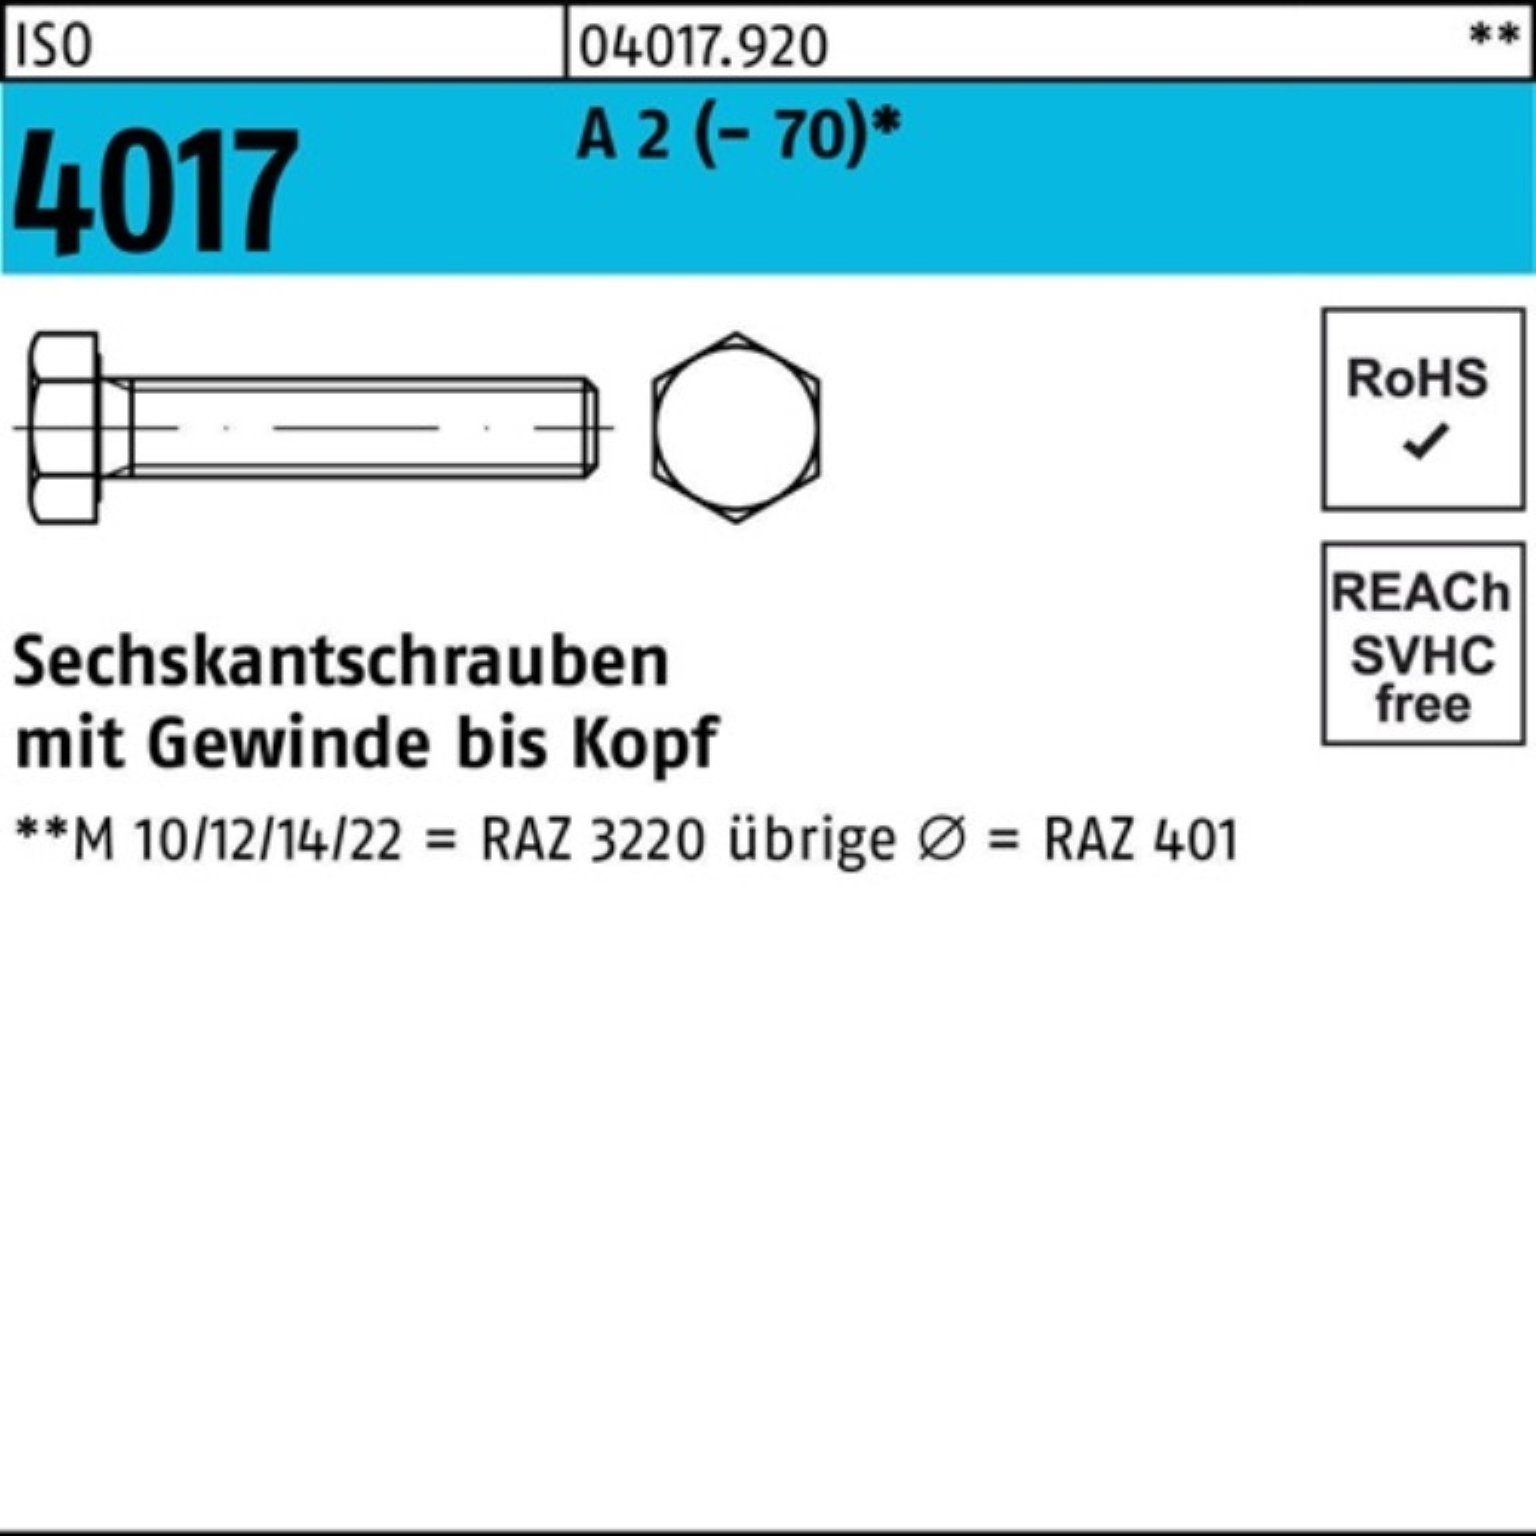 Bufab Sechskantschraube 500er Pack Sechskantschraube ISO 4017 VG M6x 12 A 2 (70) 500 Stück